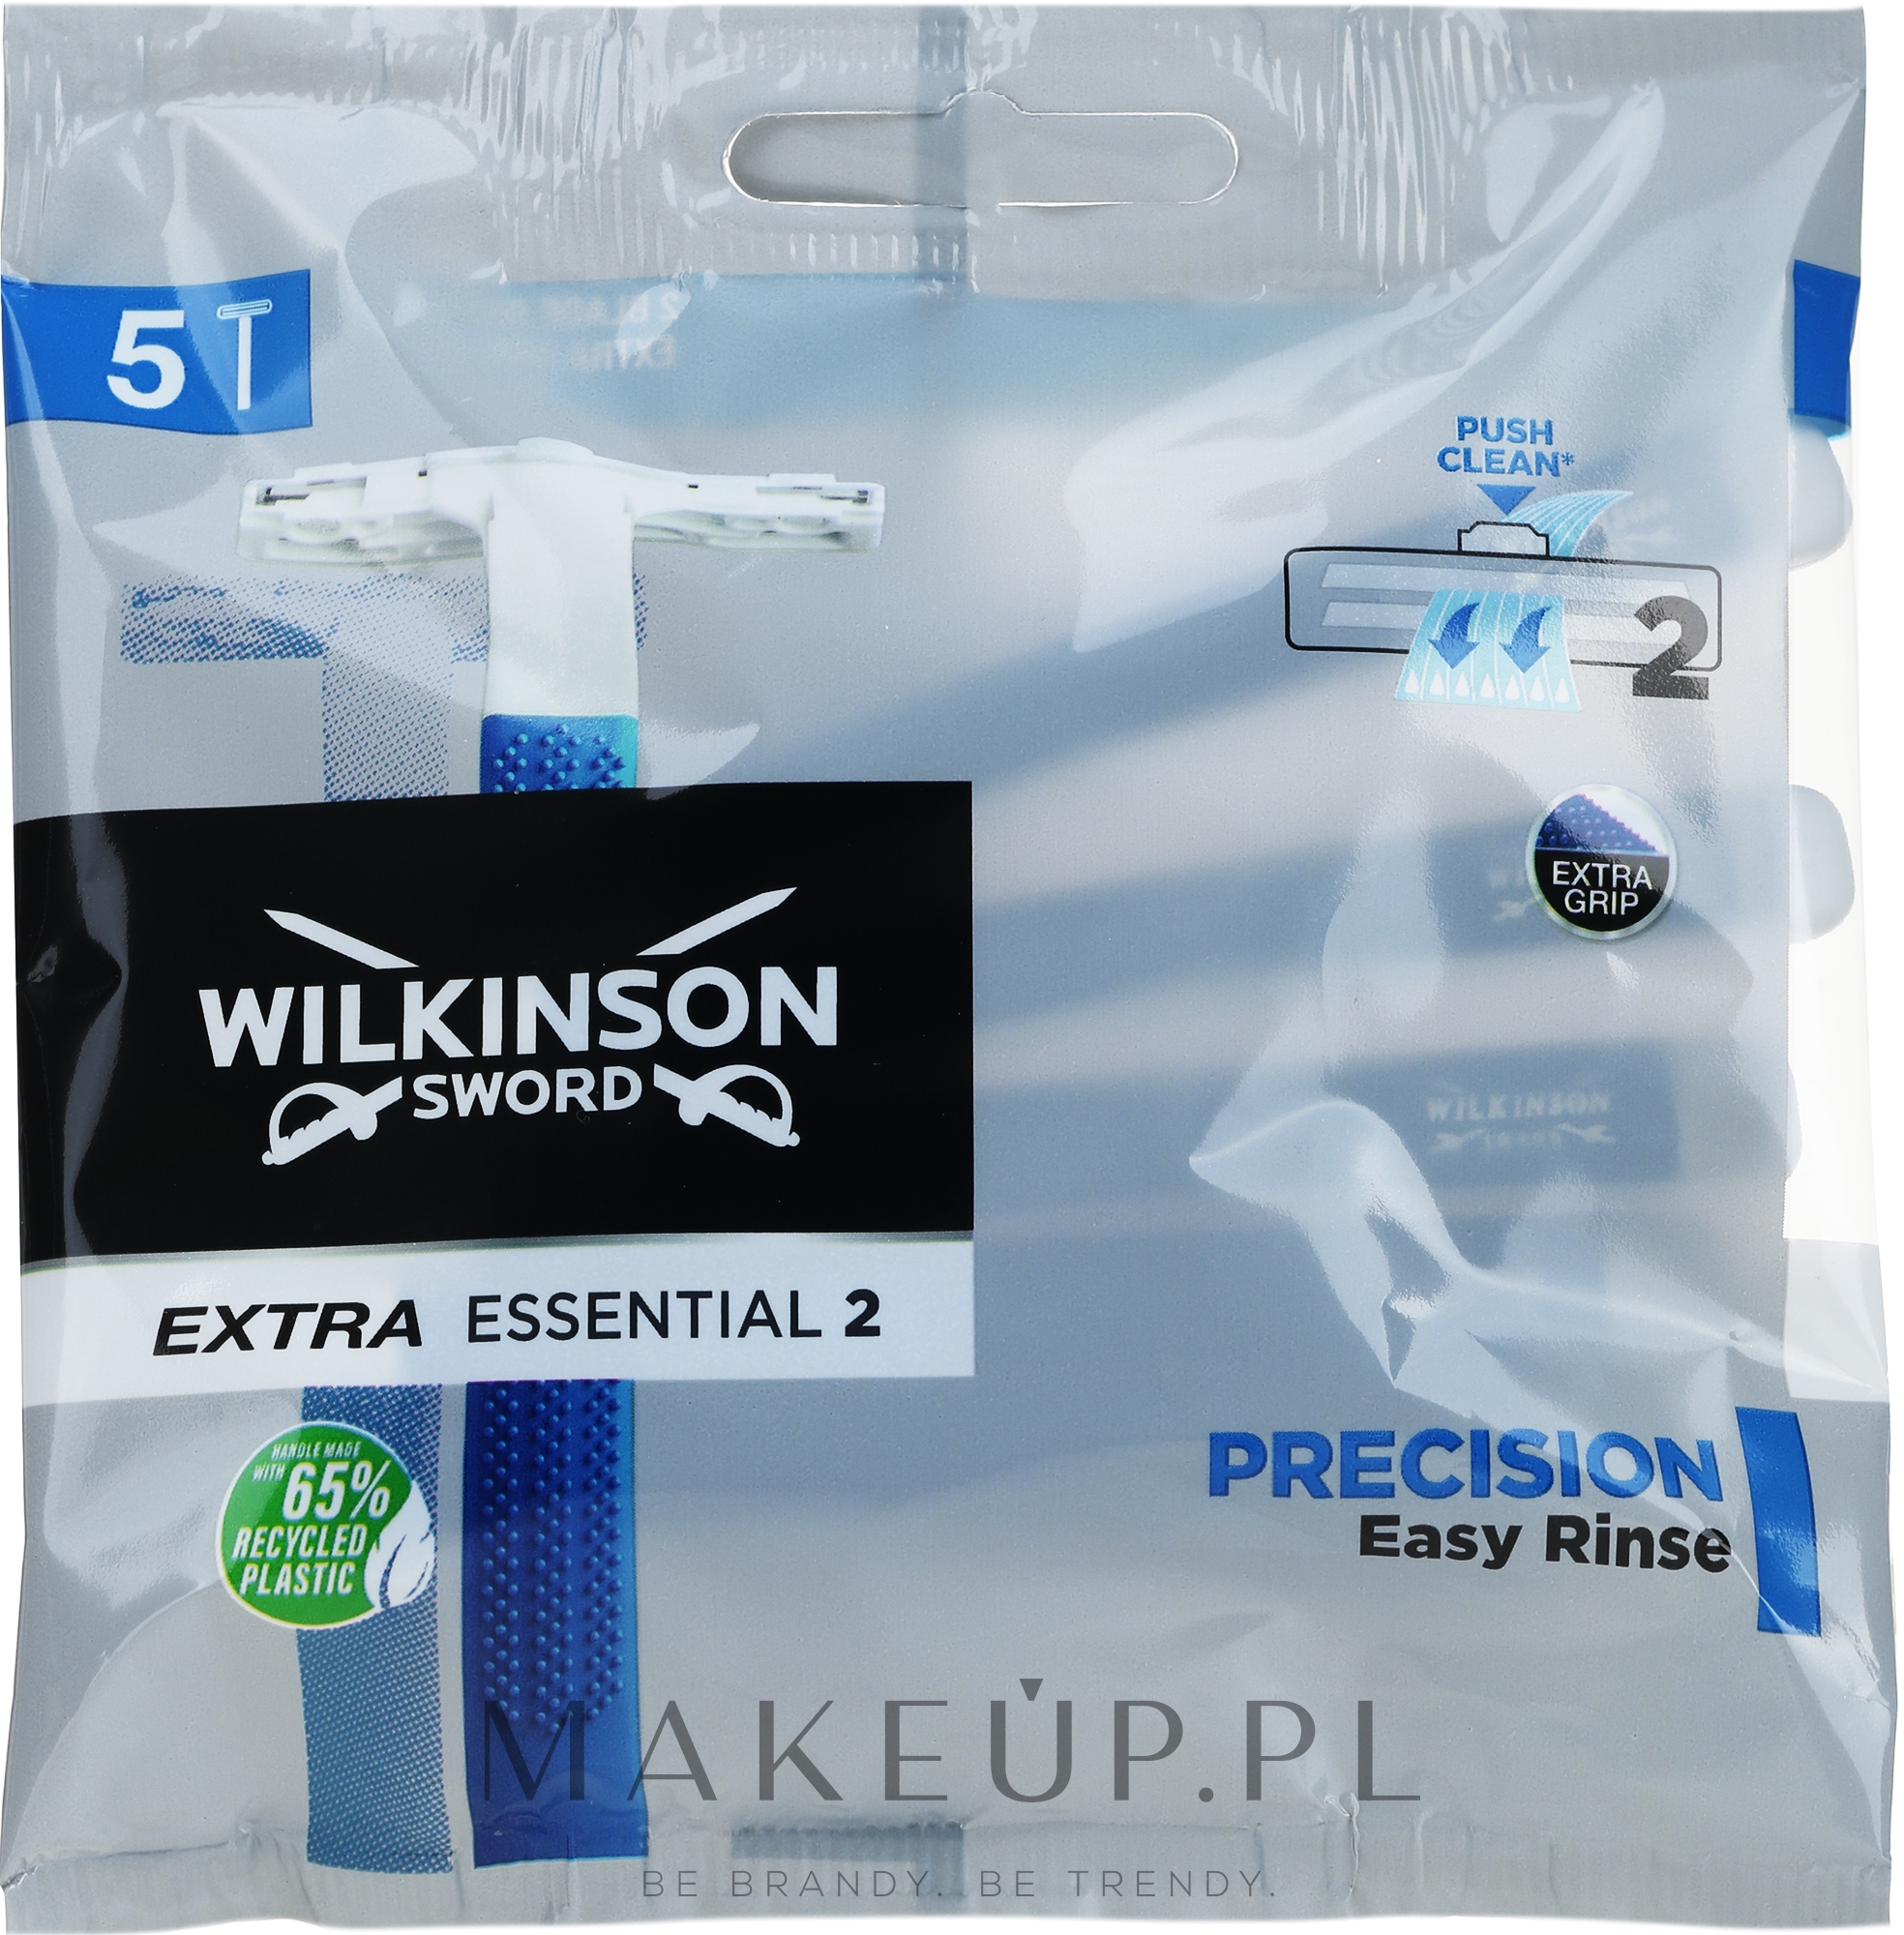 Zestaw jednorazowych maszynek do golenia dla mężczyzn - Wilkinson Sword Extra 2 Precision — Zdjęcie 5 szt.